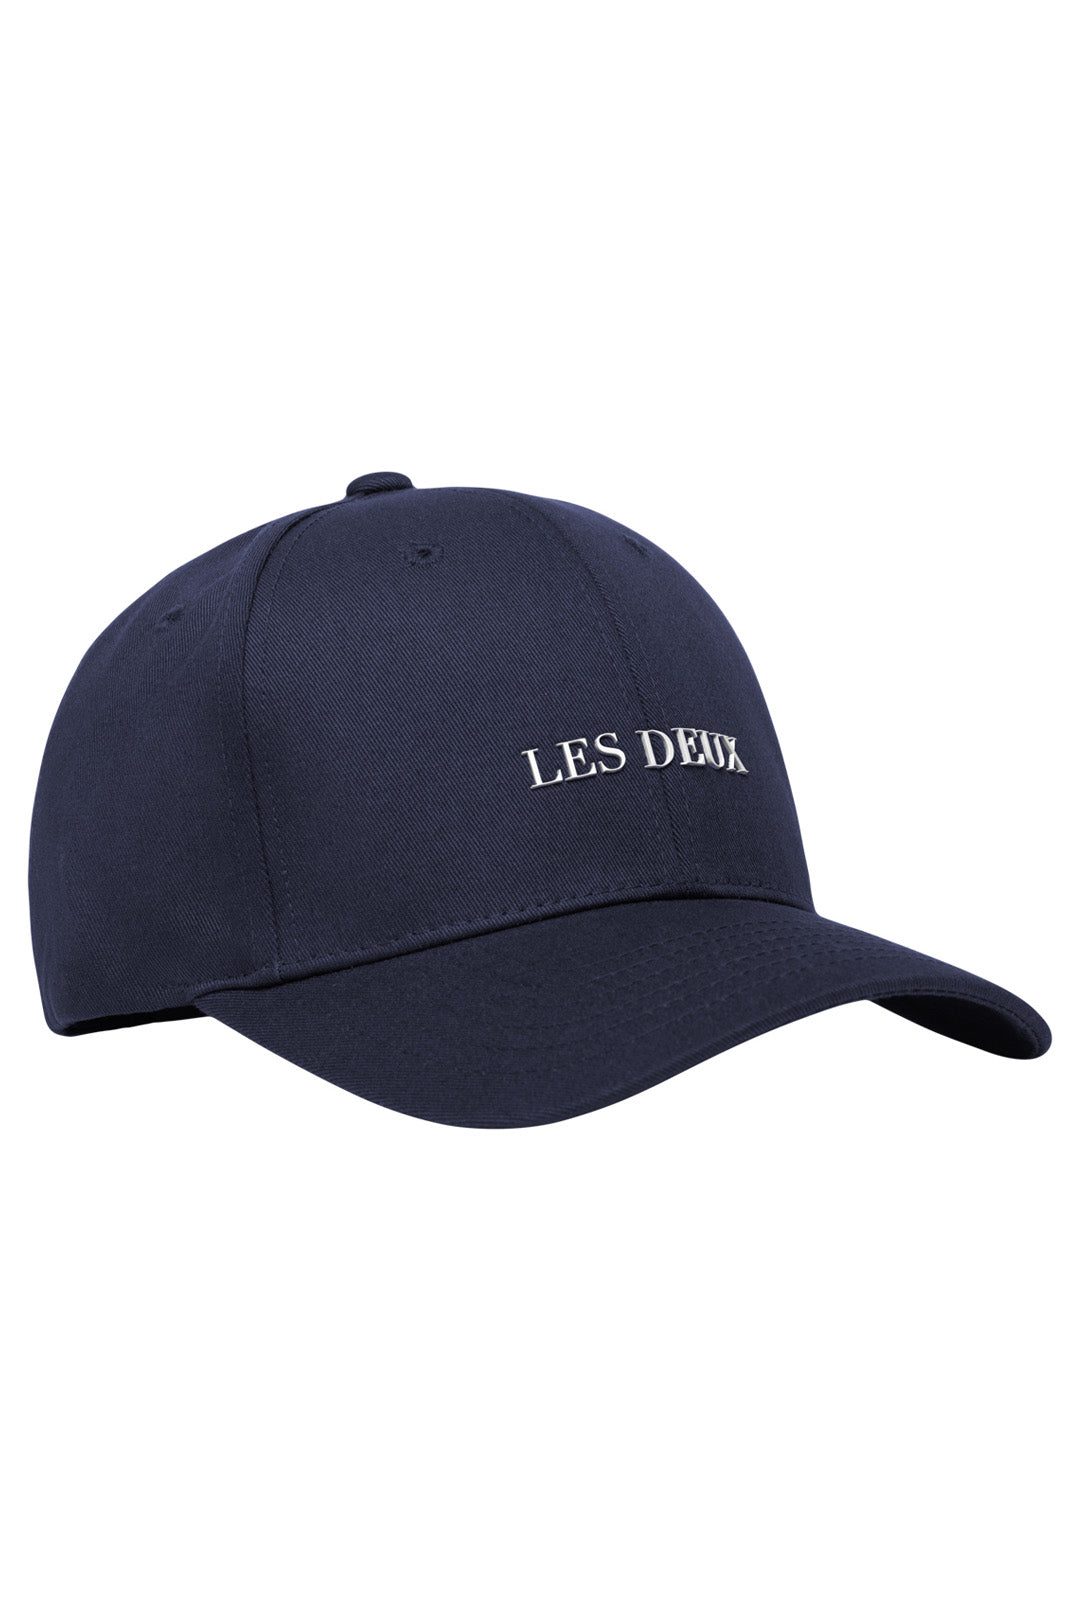 Lens baseball cap